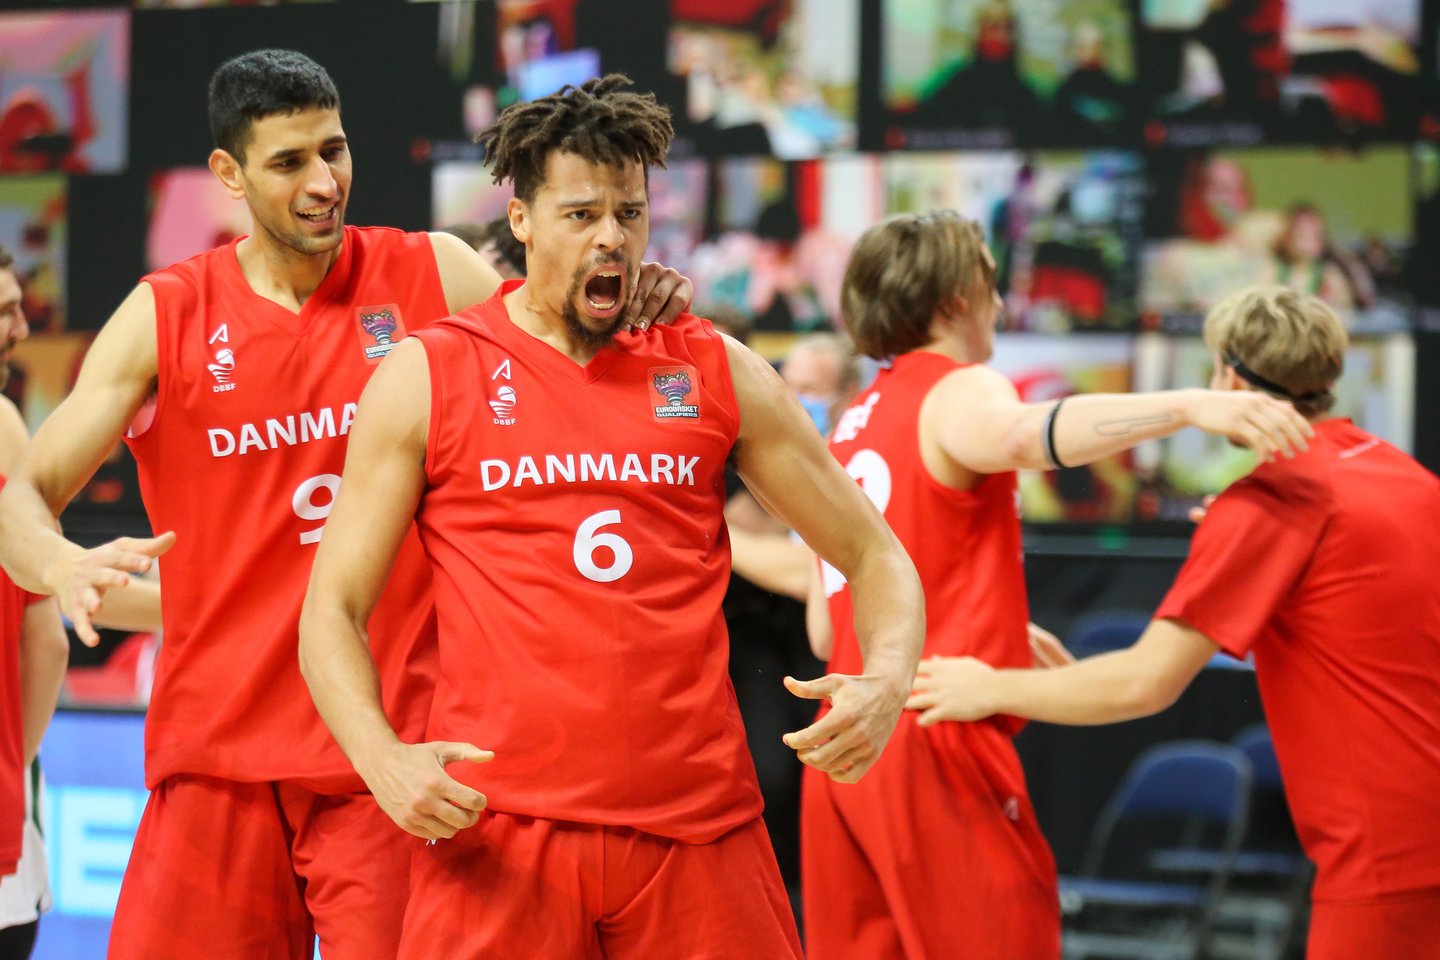 Penktadienį Didžiausios Danijos naujienų svetainės žinią apie krepšininkų pateiktą sensaciją.<br>T.Bauro nuotr.